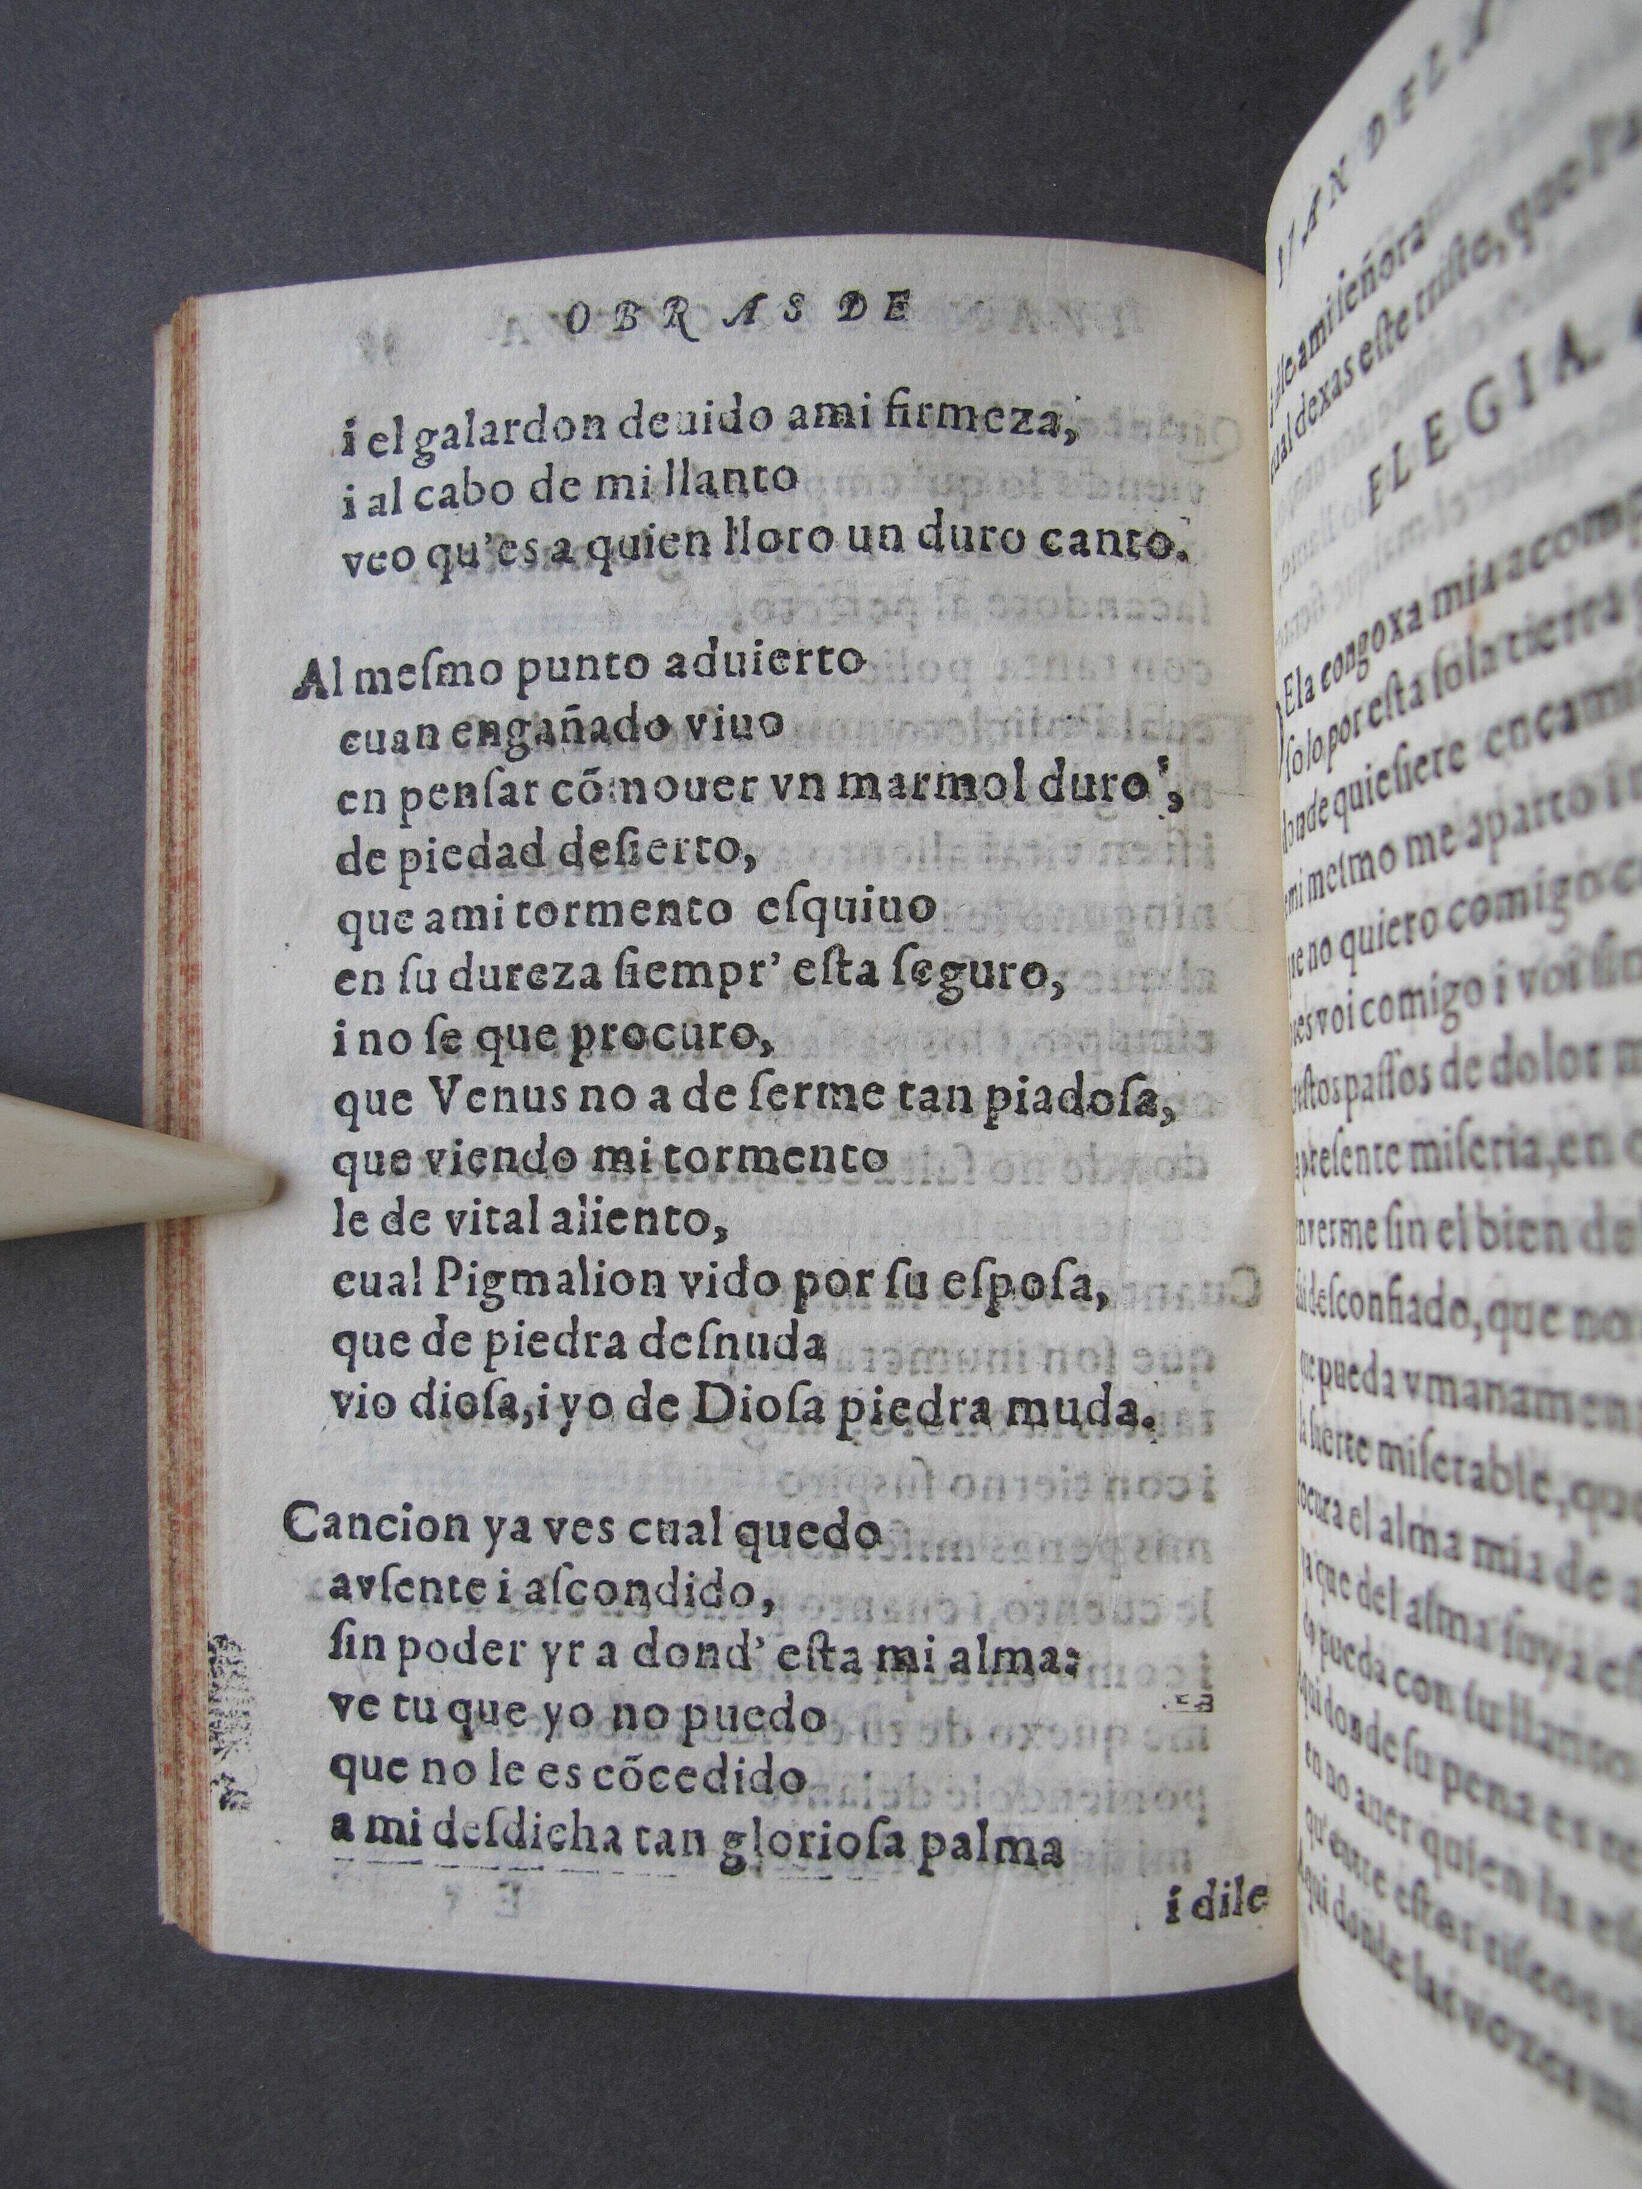 Folio E5 verso